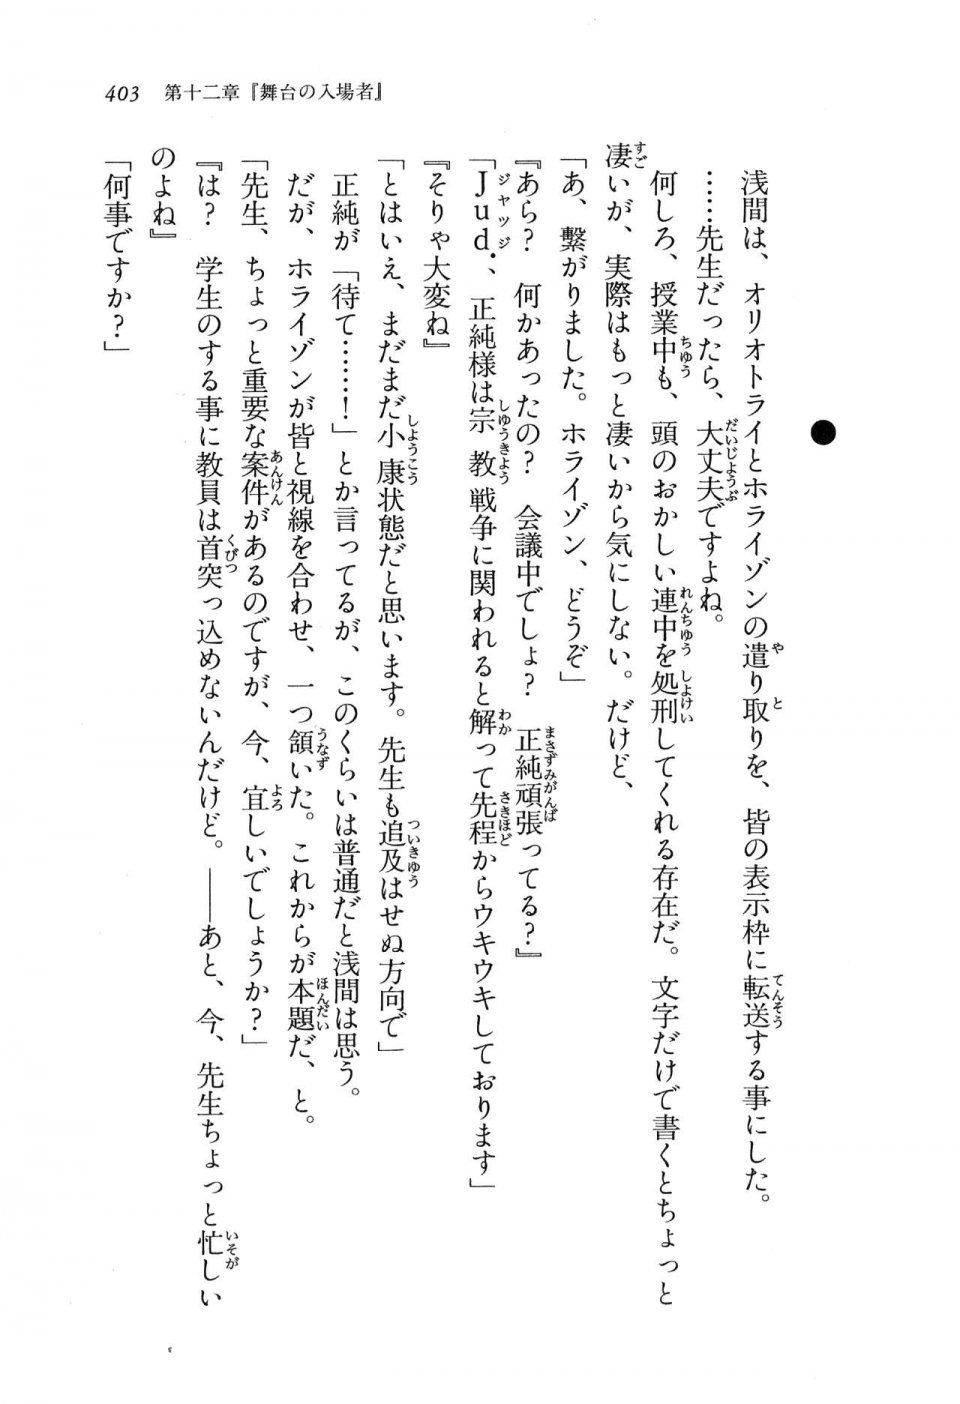 Kyoukai Senjou no Horizon LN Vol 16(7A) - Photo #403